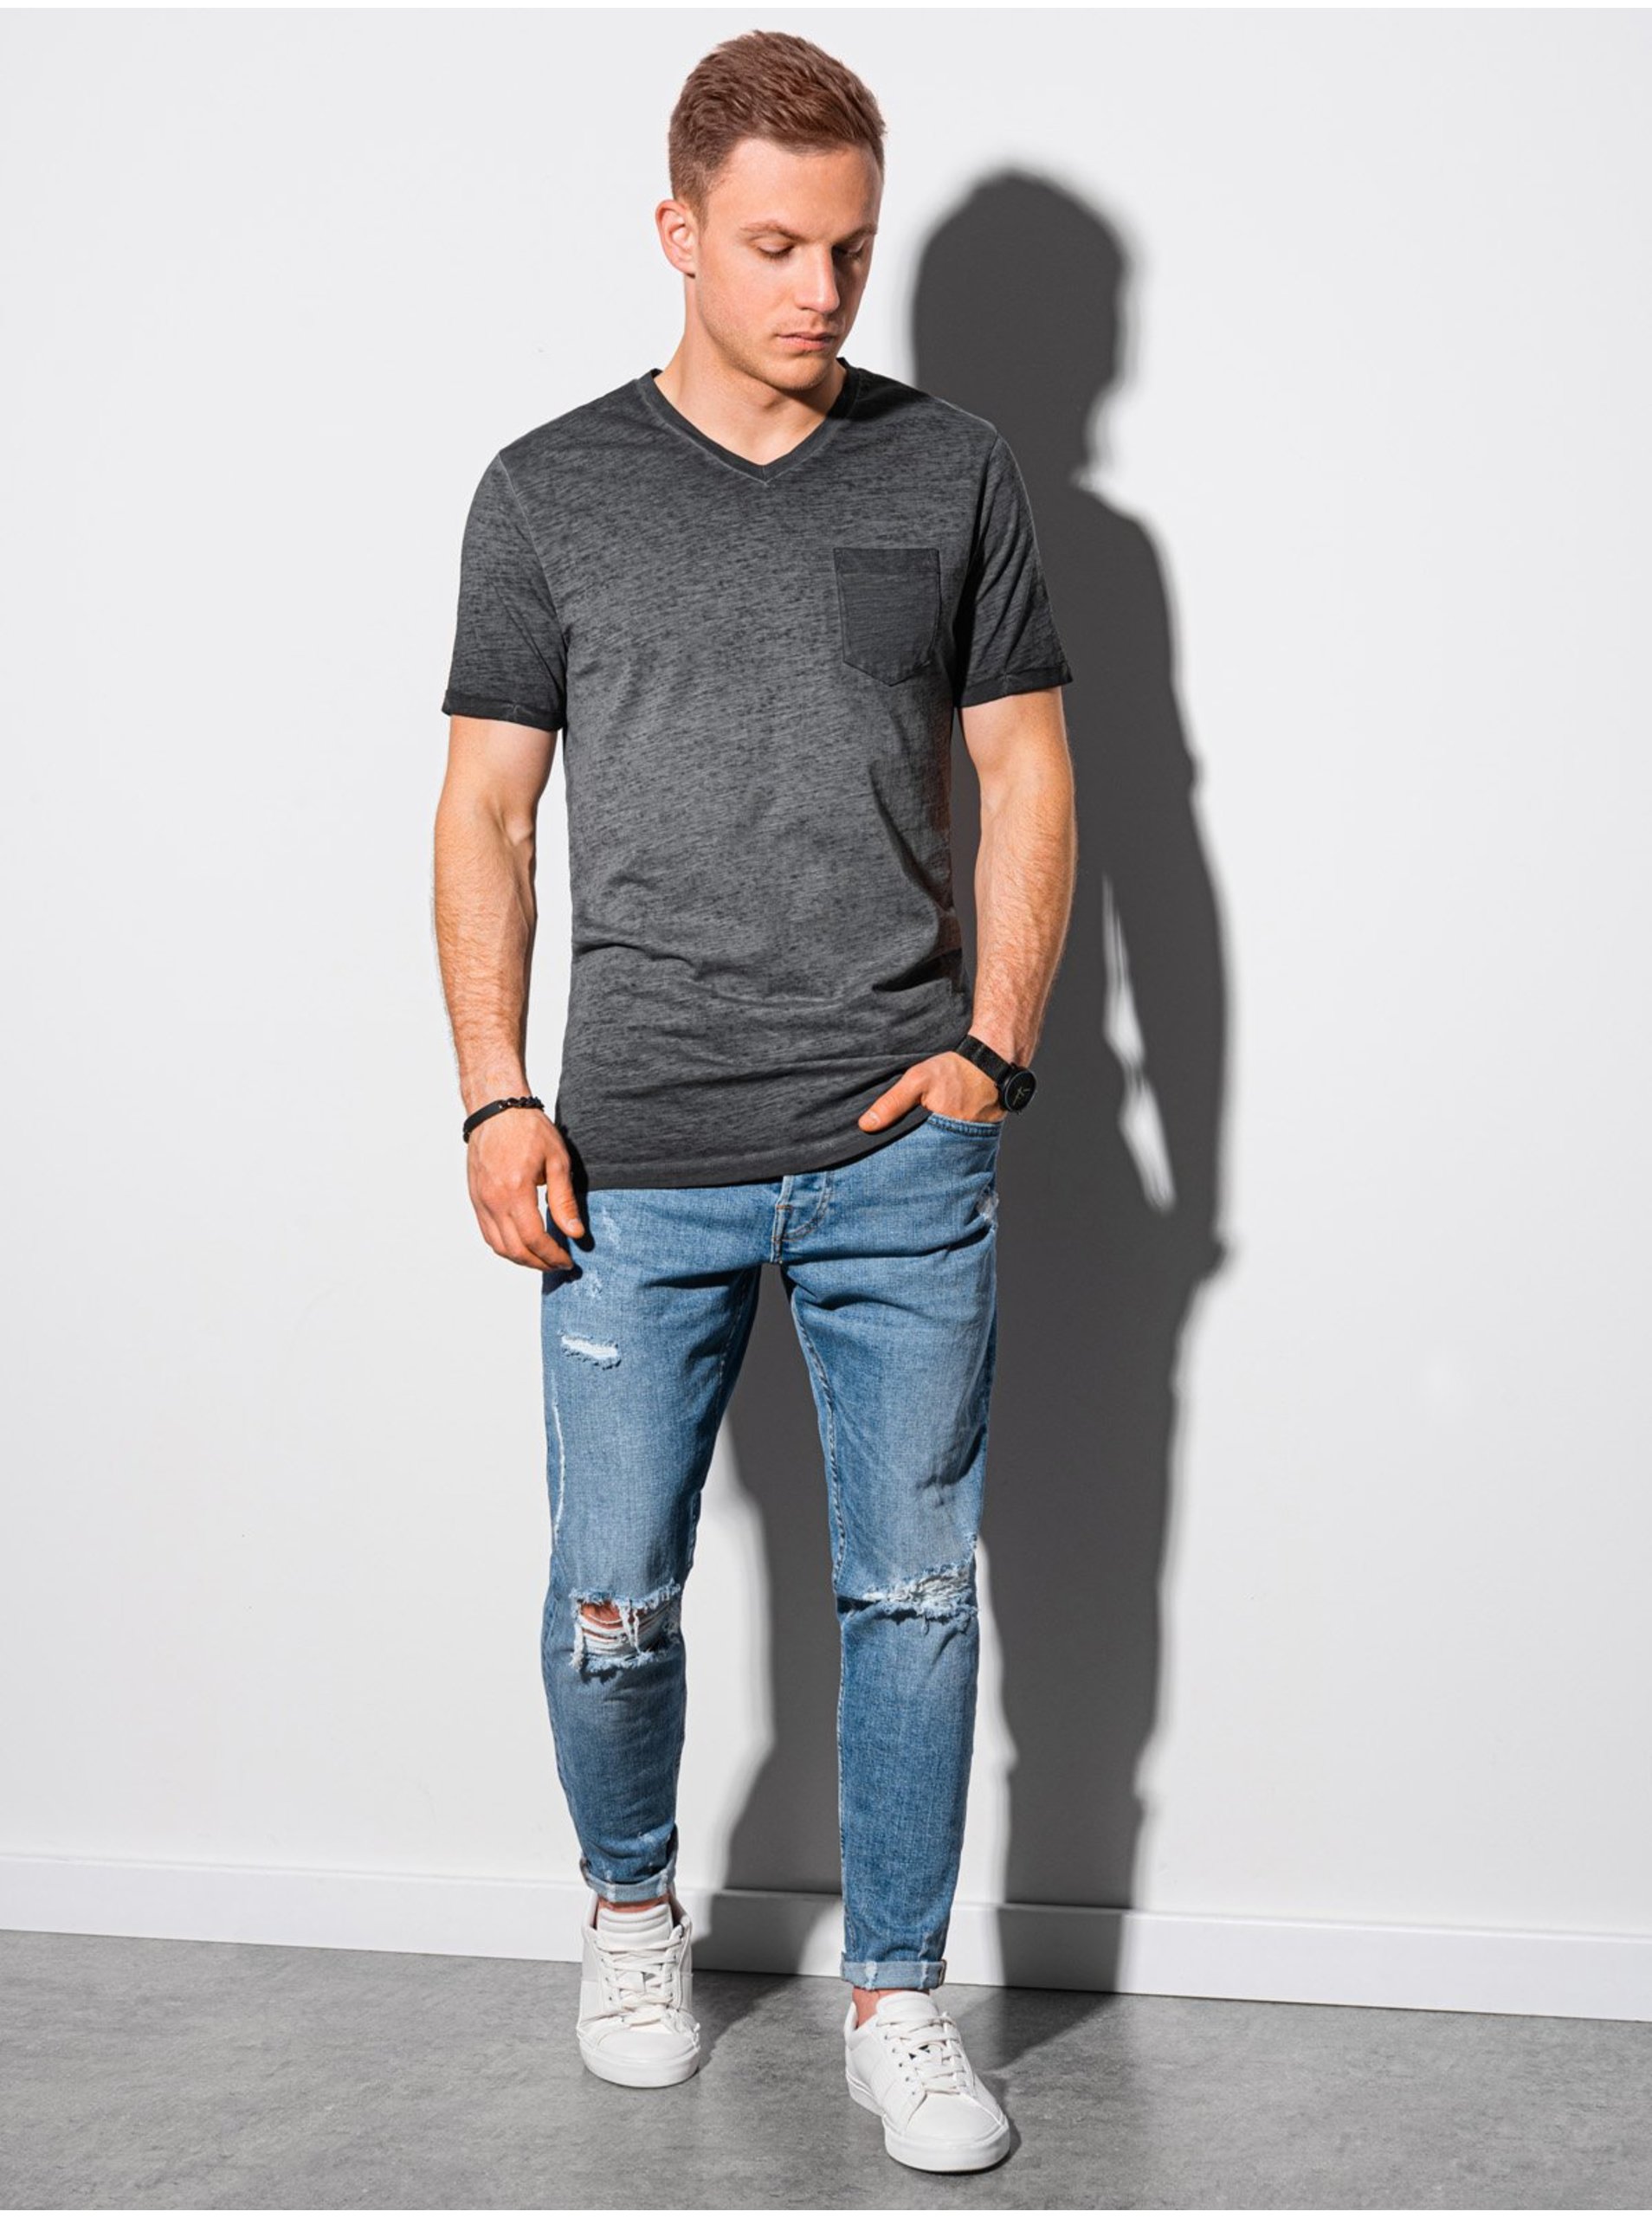 E-shop Čierne pánske tričko bez potlače Ombre Clothing S1388